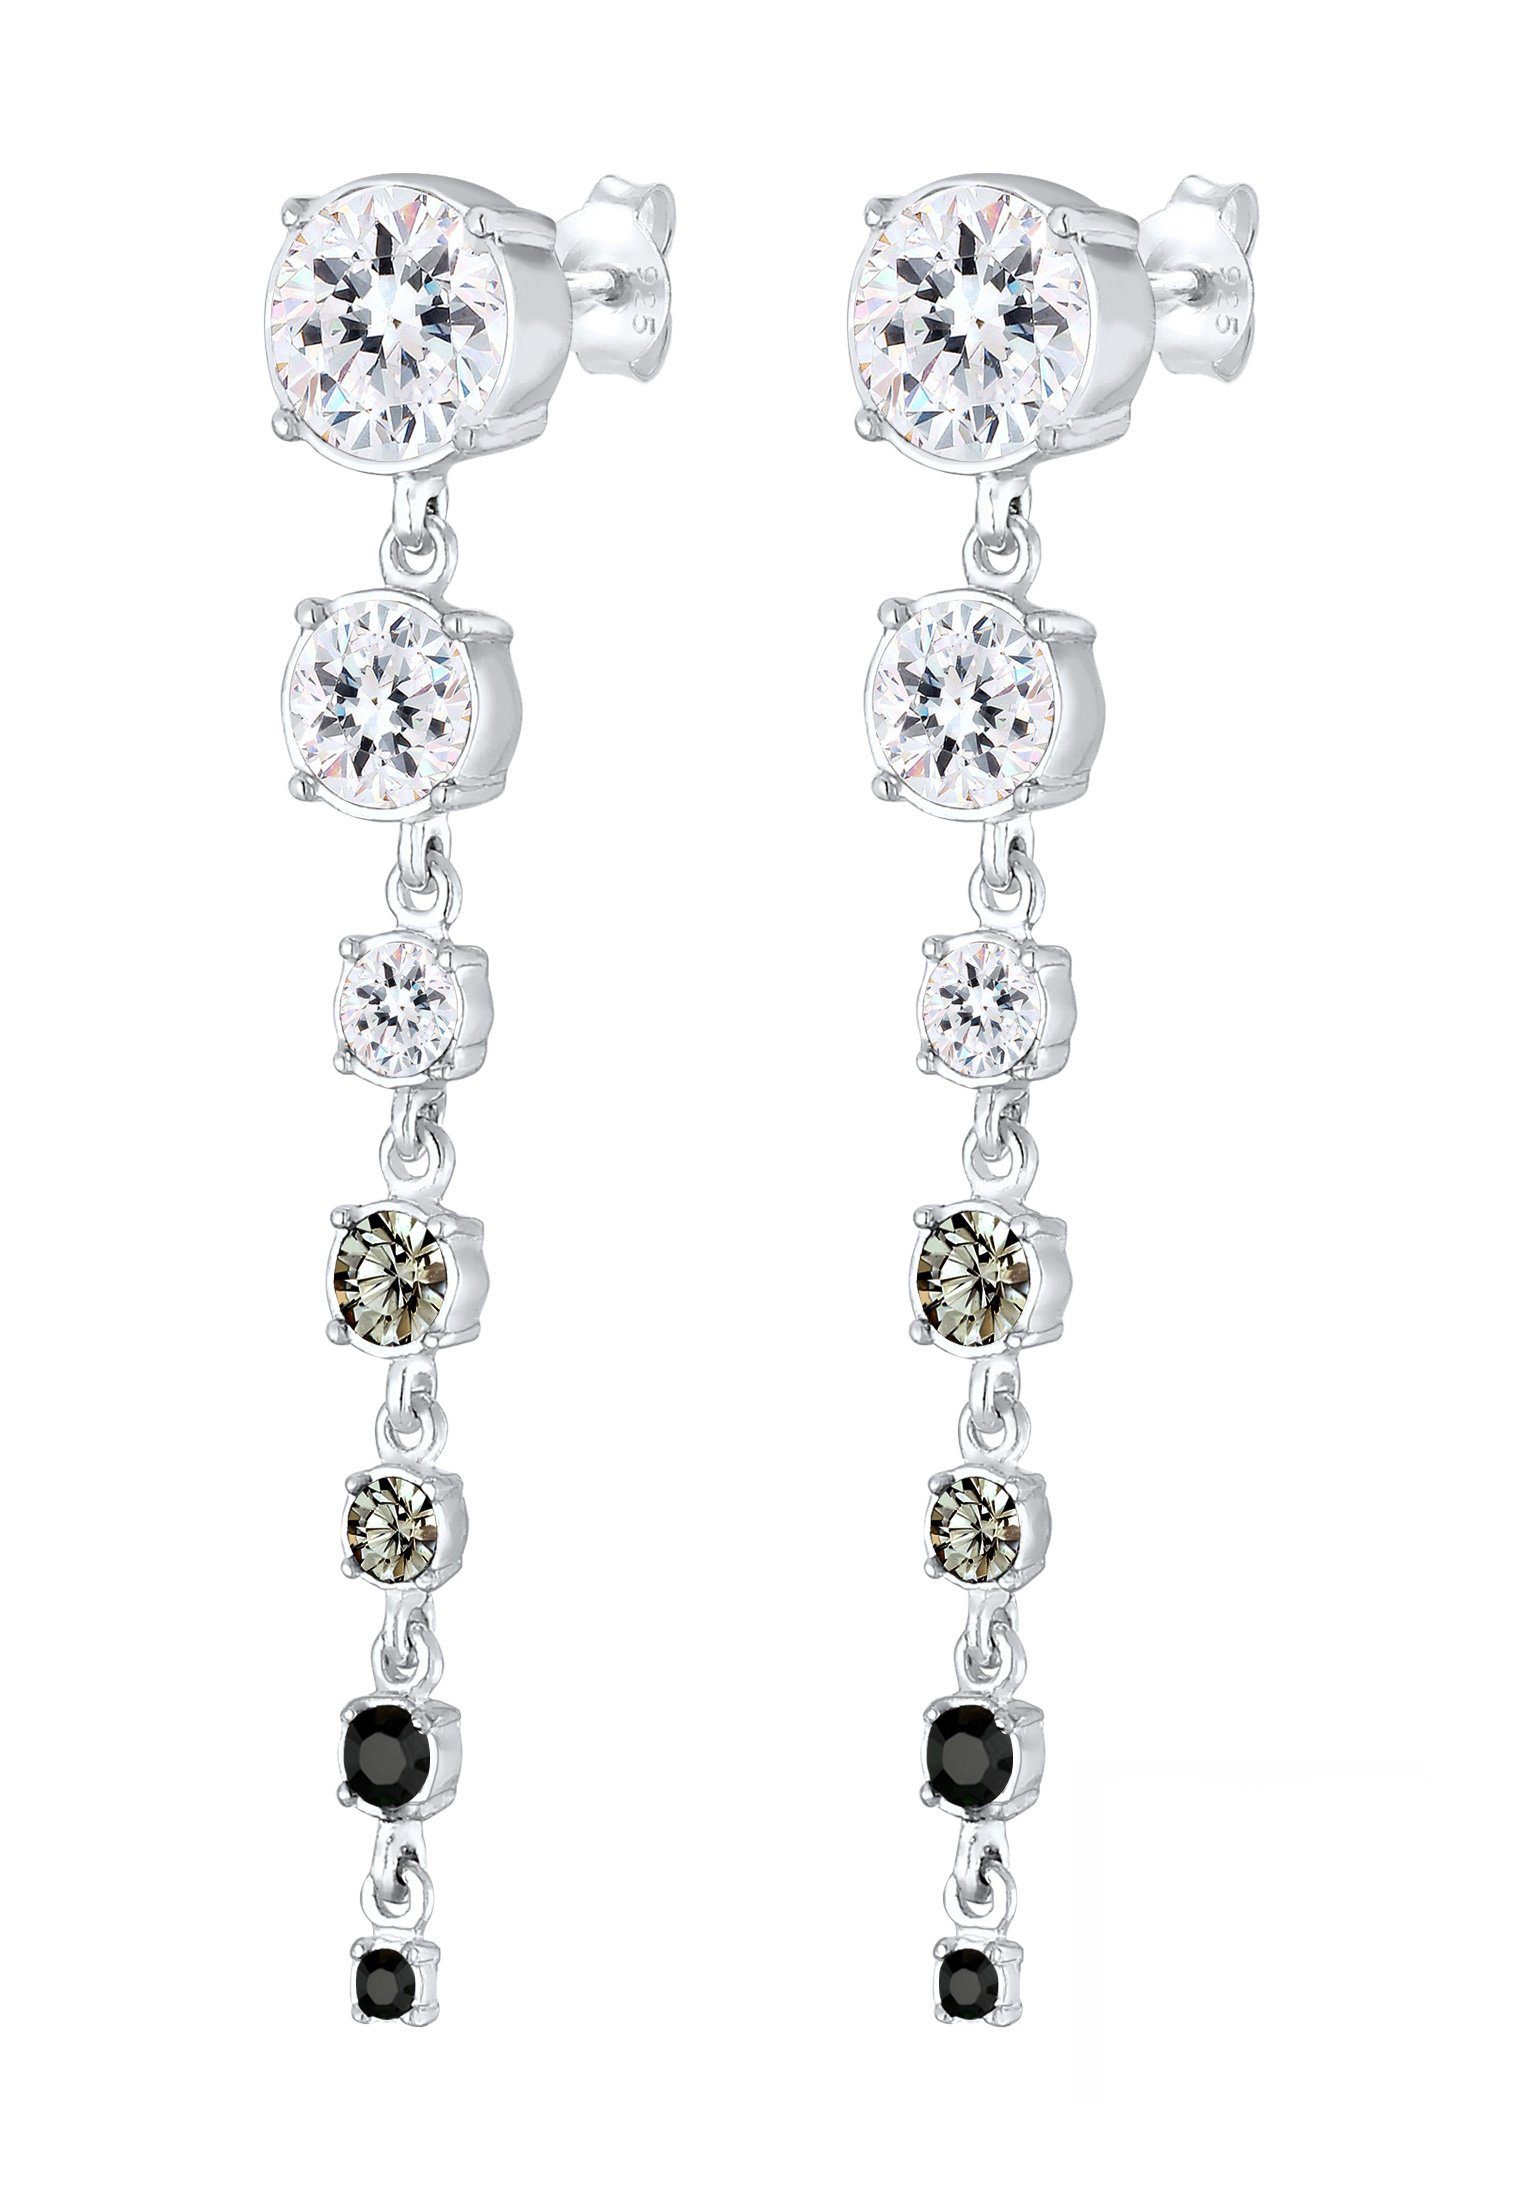 Paar Silber Kristalle Ohrhänger Ohrhänger Premium Elli Grau 925